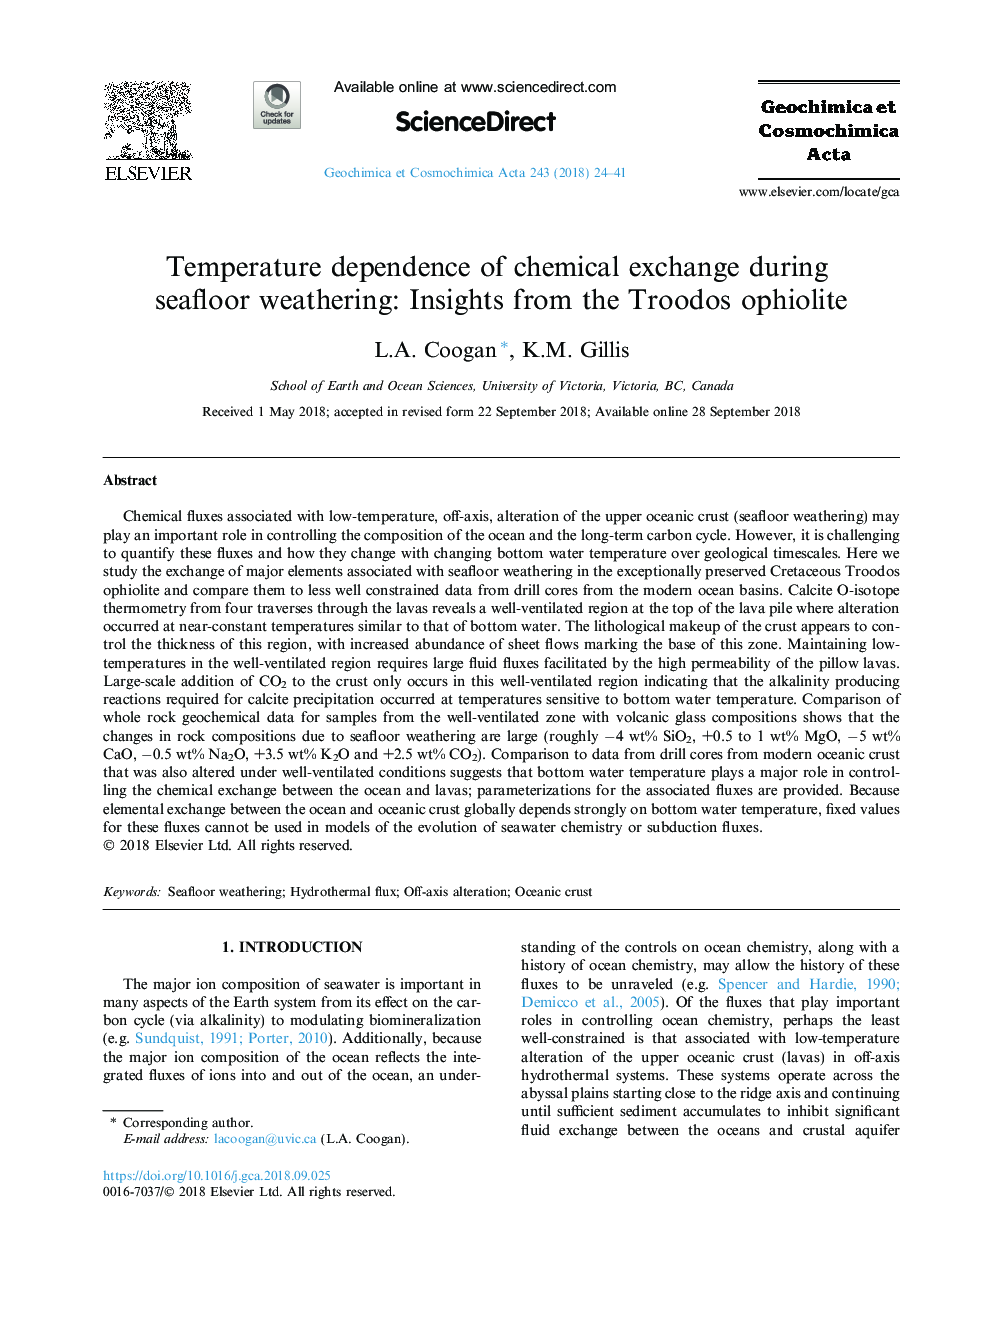 وابستگی درجه حرارت مبادله شیمیایی در هوای فصلی دریایی: مشاهدات از افیولیت تروودوس